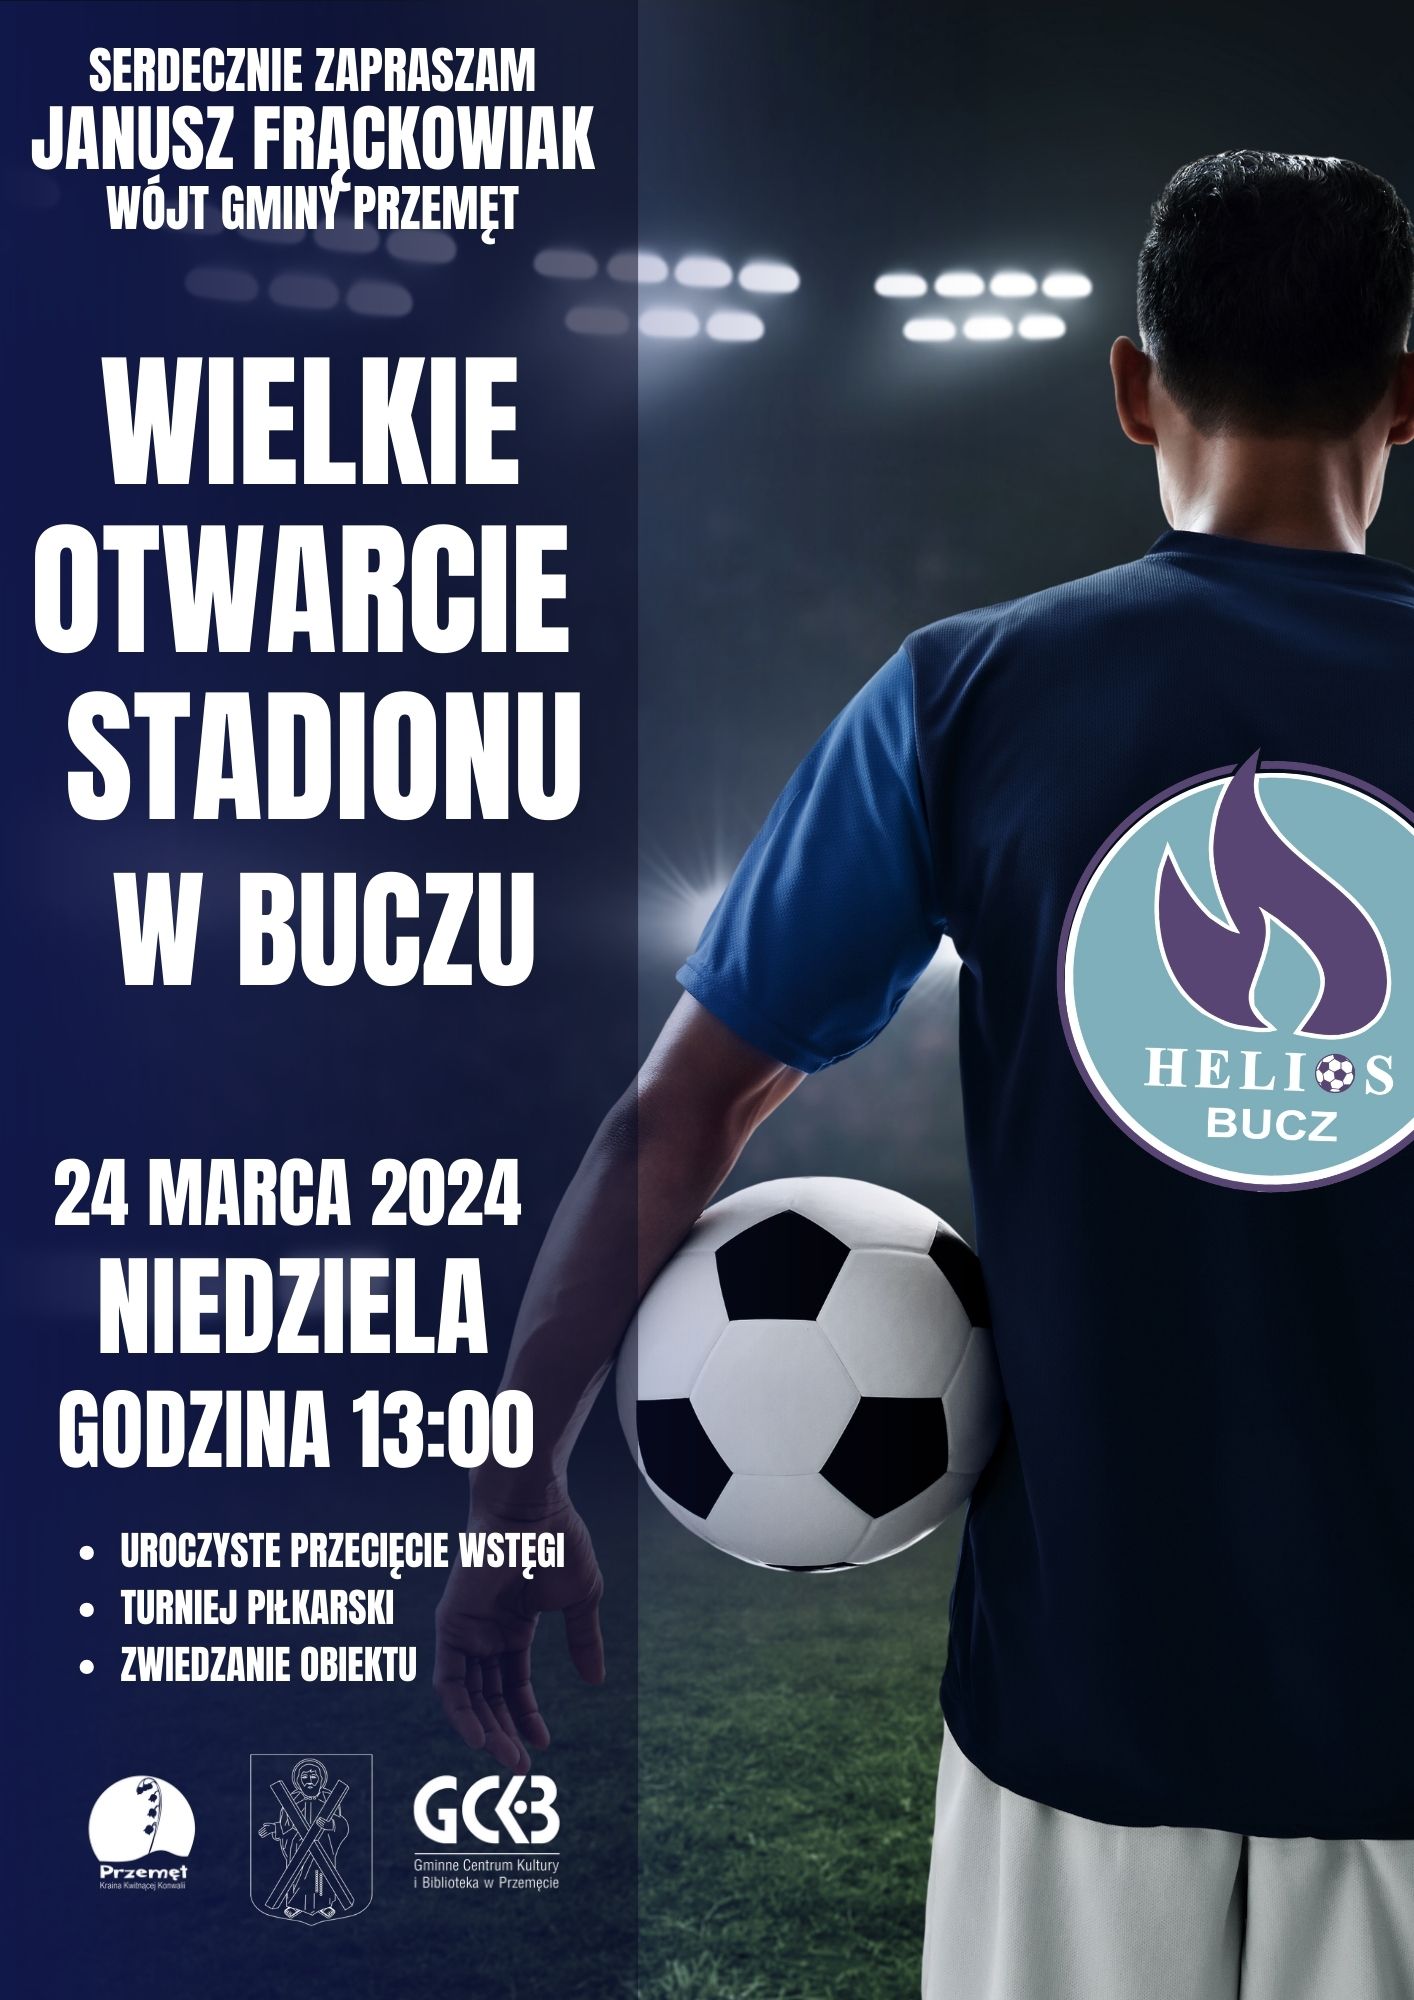 Plakat - Wielkie otwarcie stadionu w Buczu 24 marca 2024, niedziela, godzina 13:00, uroczyste przecięcie wstęgi, turniej piłkarski, zwiedzanie obiektu